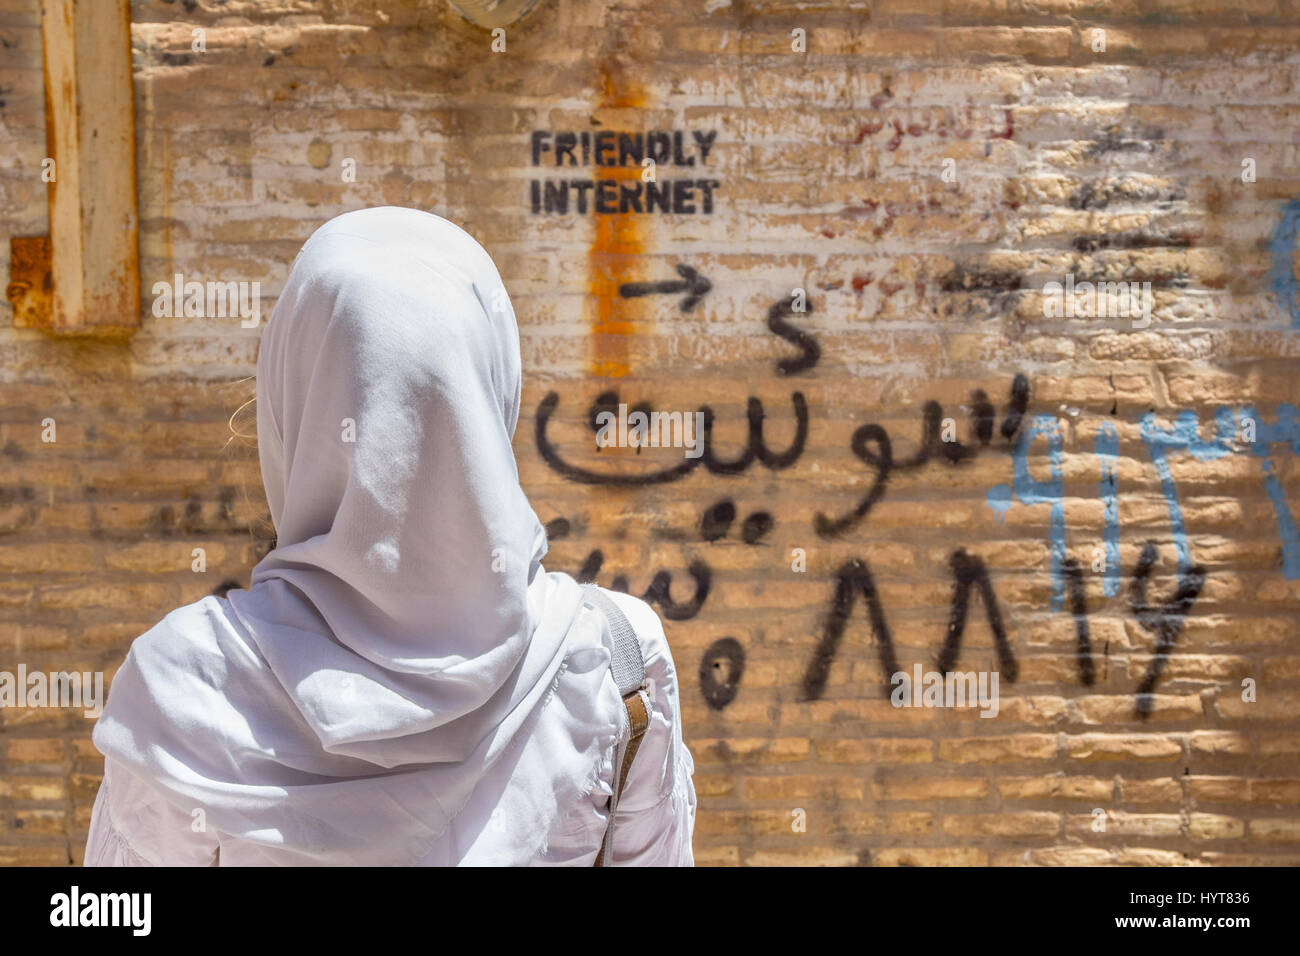 YAZD, IRAN - 18. AUGUST 2016: Verschleierte Frau auf eine Inschrift an der Wand zeigt unzensierte Internet spot Bild einer Frau das Tragen eines sca Stockfoto